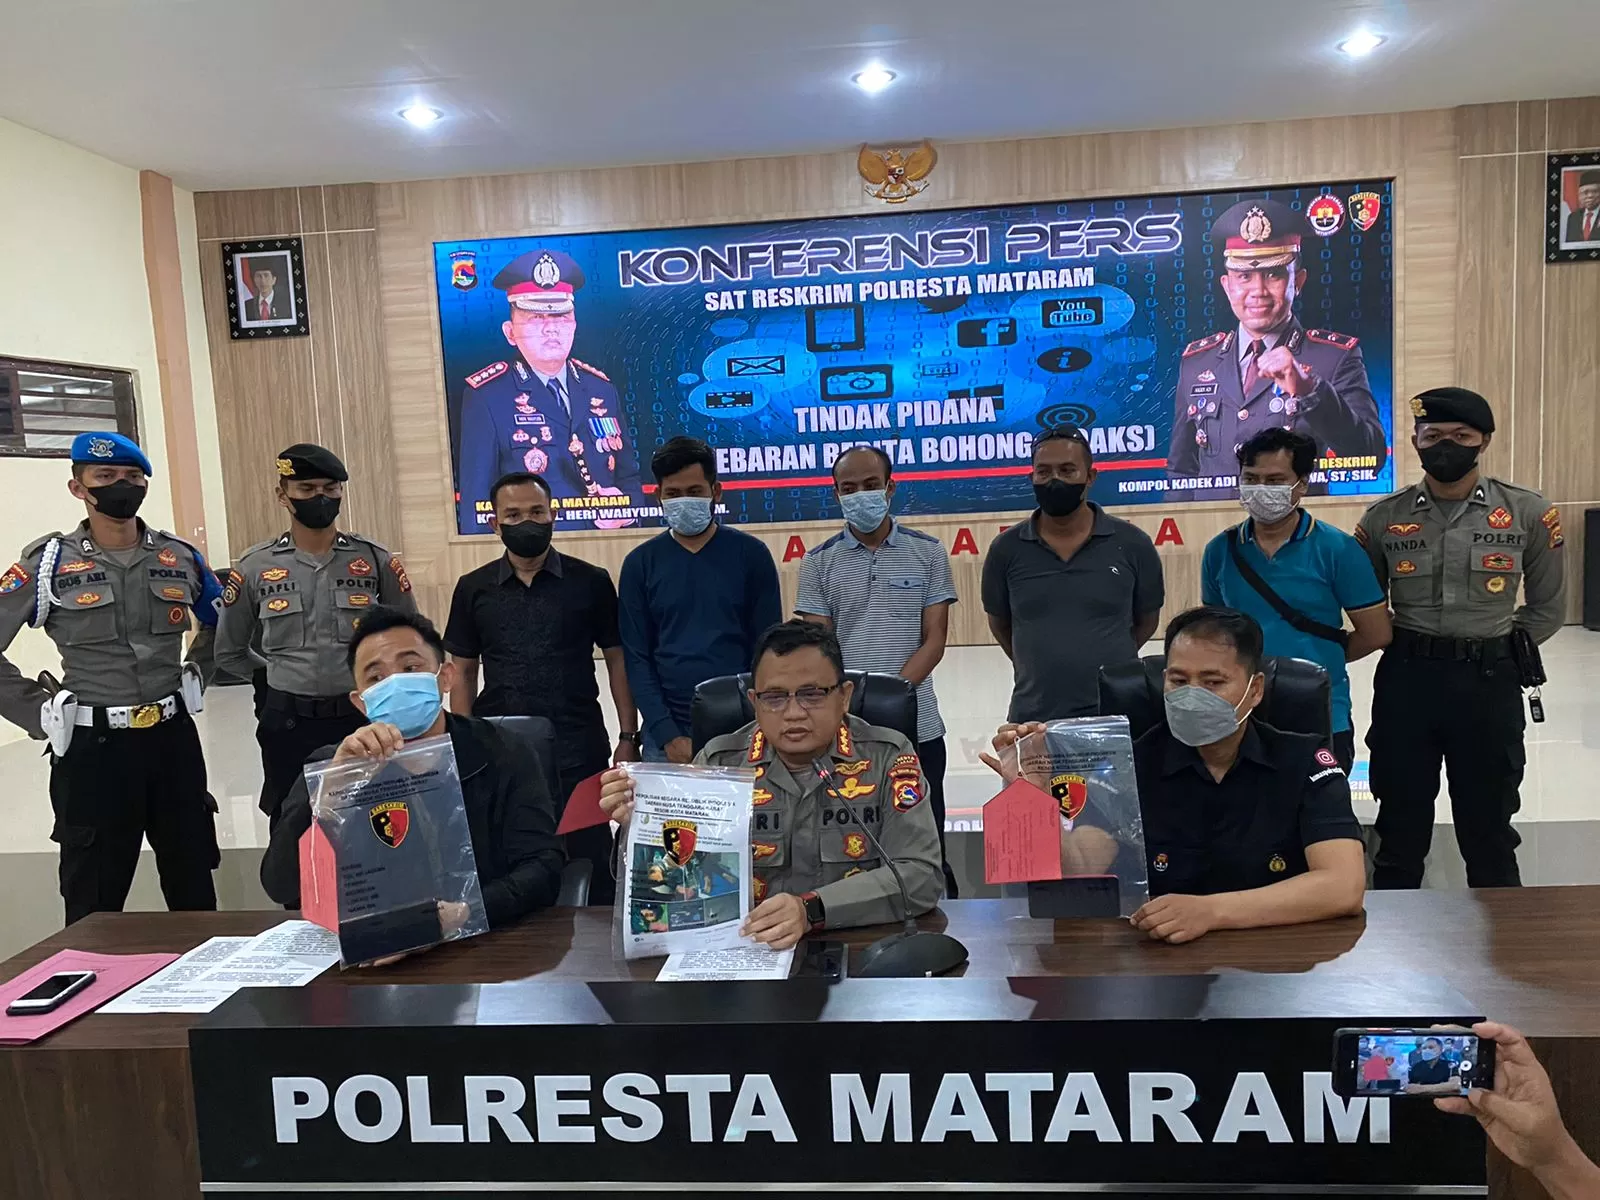 Foto : Polresta Mataram menggelar Konferensi pers Berita hoax korban pemanahan, dipimpin langsung Kapolresta Mataram Kombes Pol Heri Wahyudi SIK MM, Kamis (26/05) di Gedung Wira Graha Pratama Polresta Mataram.  